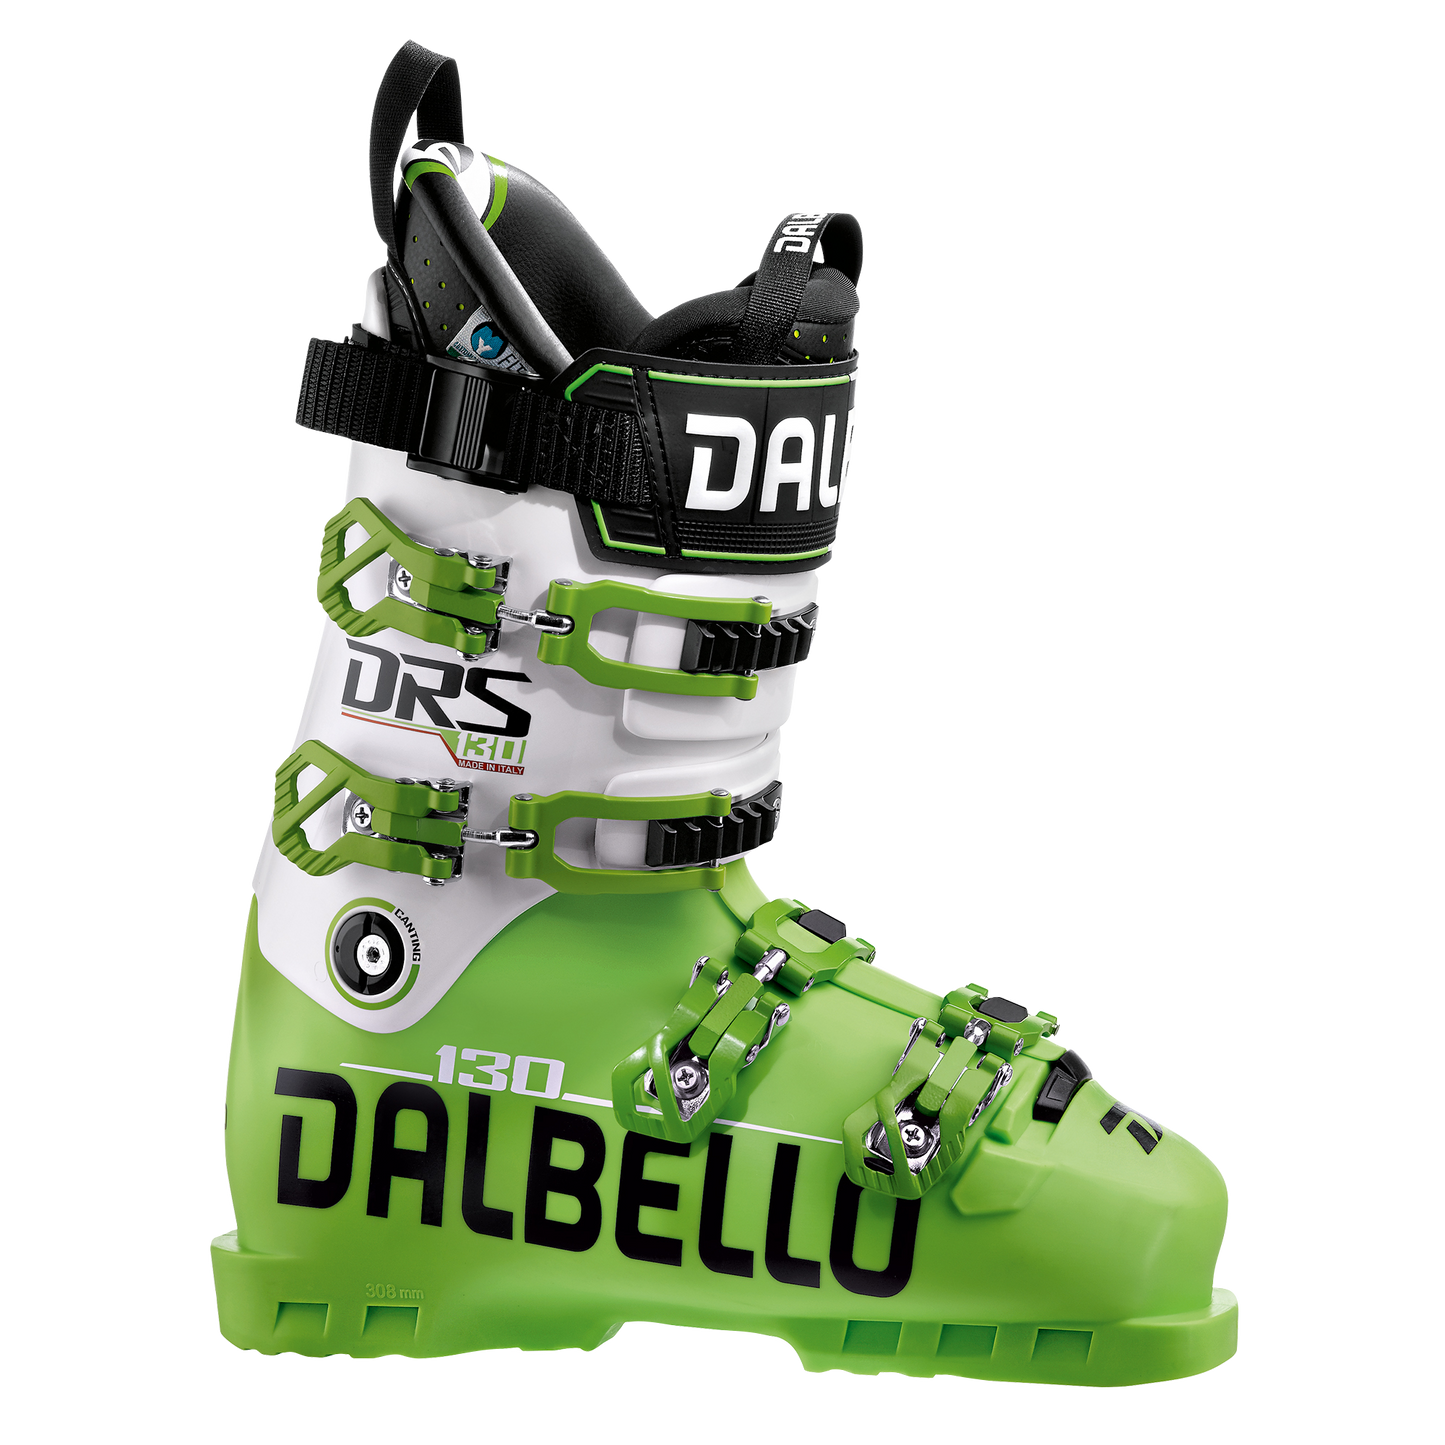 Dalbello DRS 130 2018